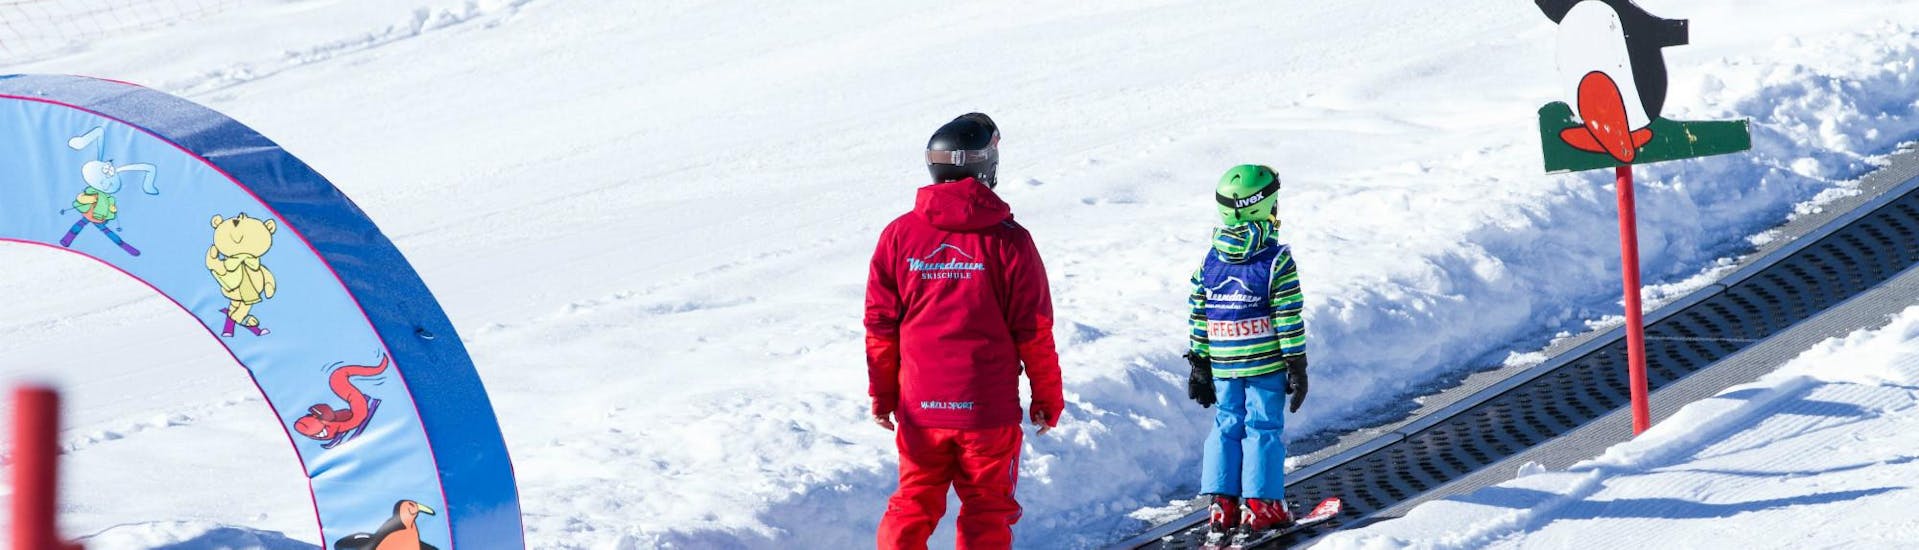 Skilessen voor Kinderen (3-7 jaar) voor Beginners - Halve dag.